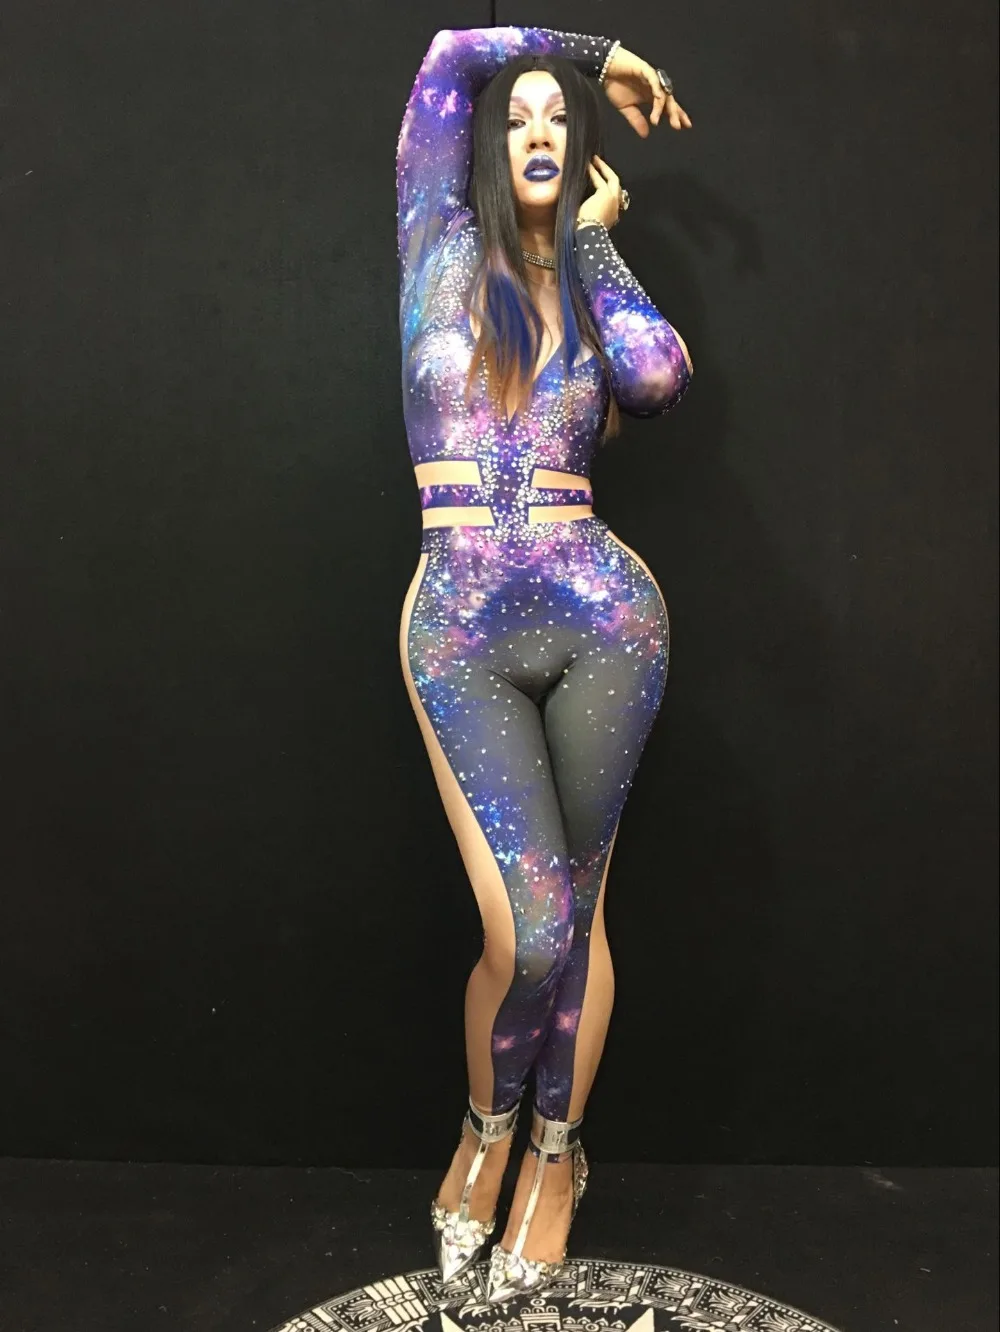 Кристиа Белла, Модный комбинезон с принтом галактики и кристаллами, женский сексуальный боди для ночного клуба, стрейчевое трико, одежда для выступлений певицы